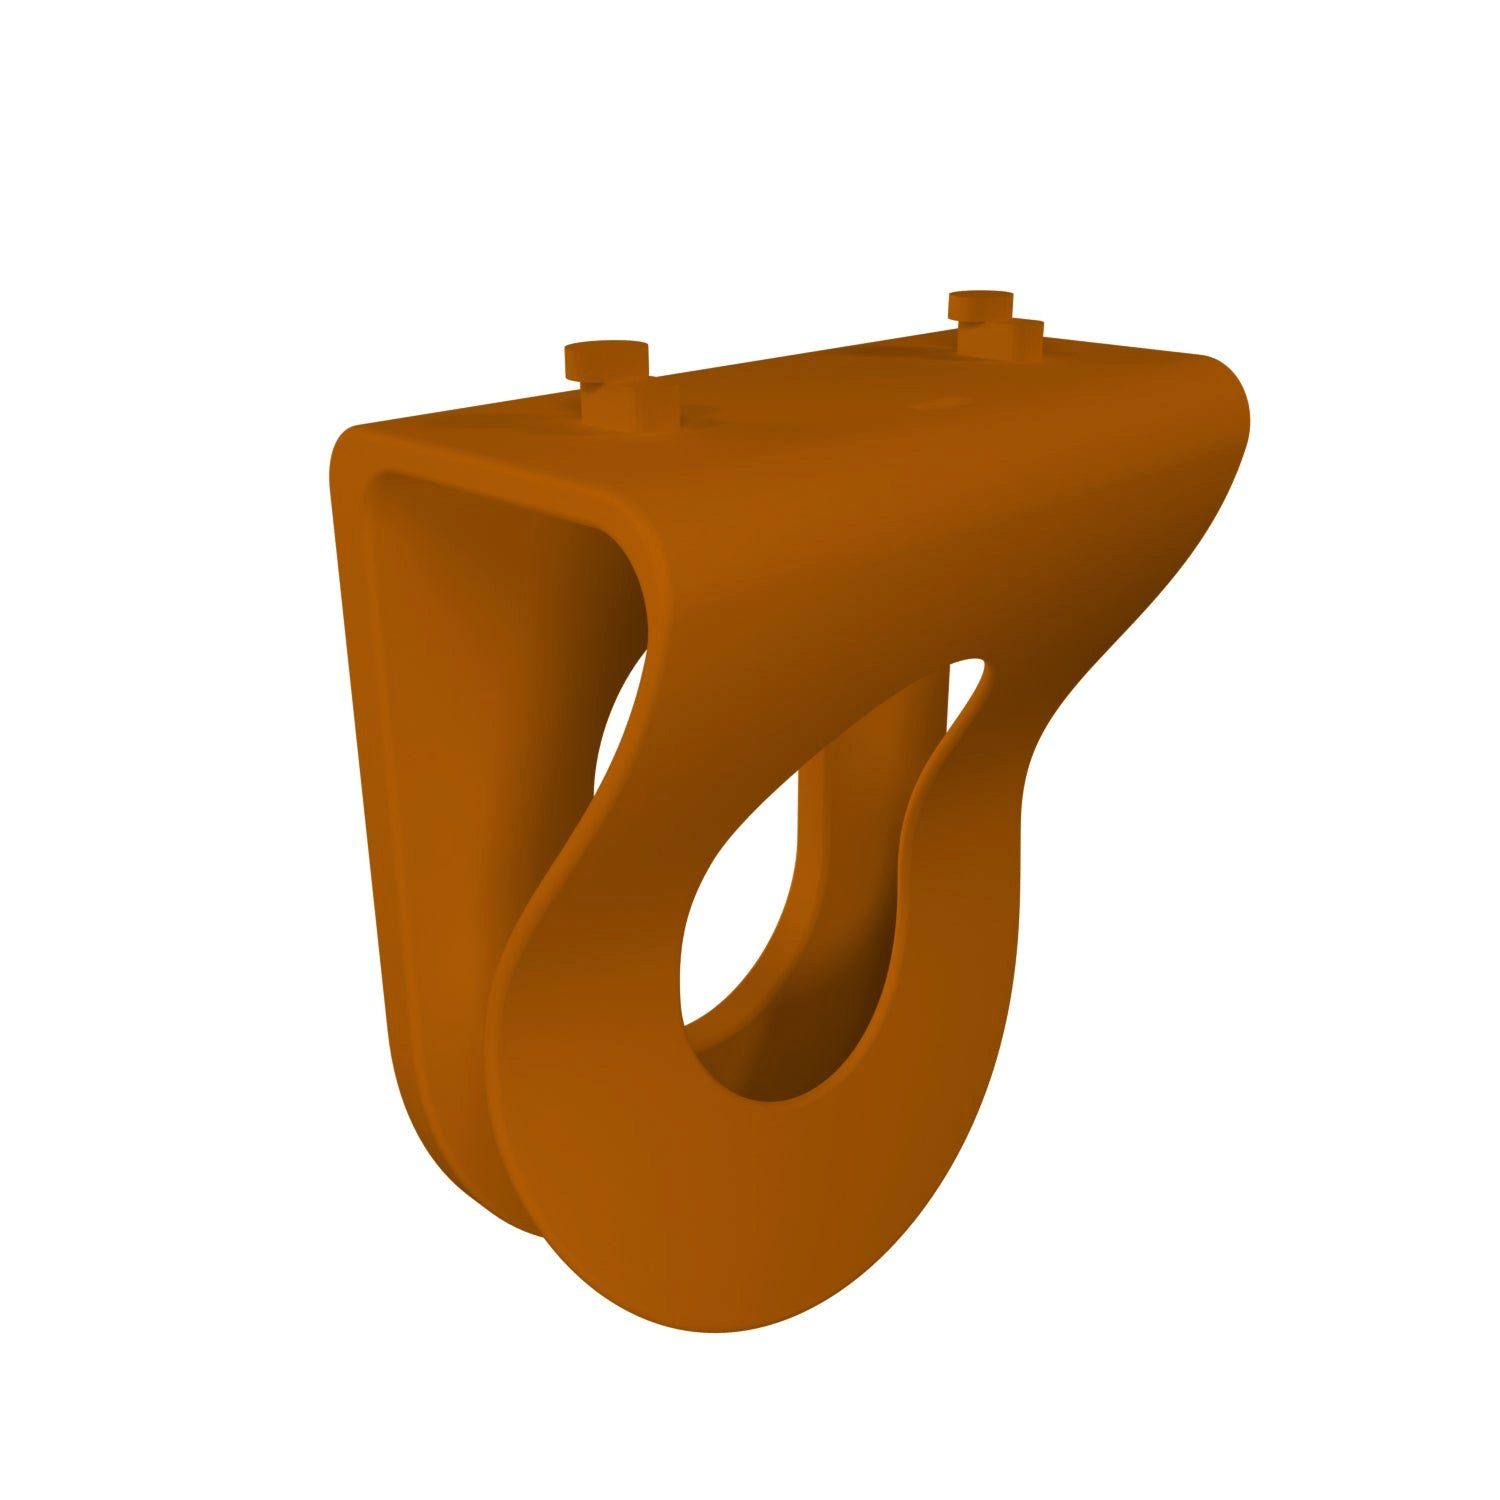 Steckdosen-Halterung für die Hue Bridge aus dem 3D-Drucker 